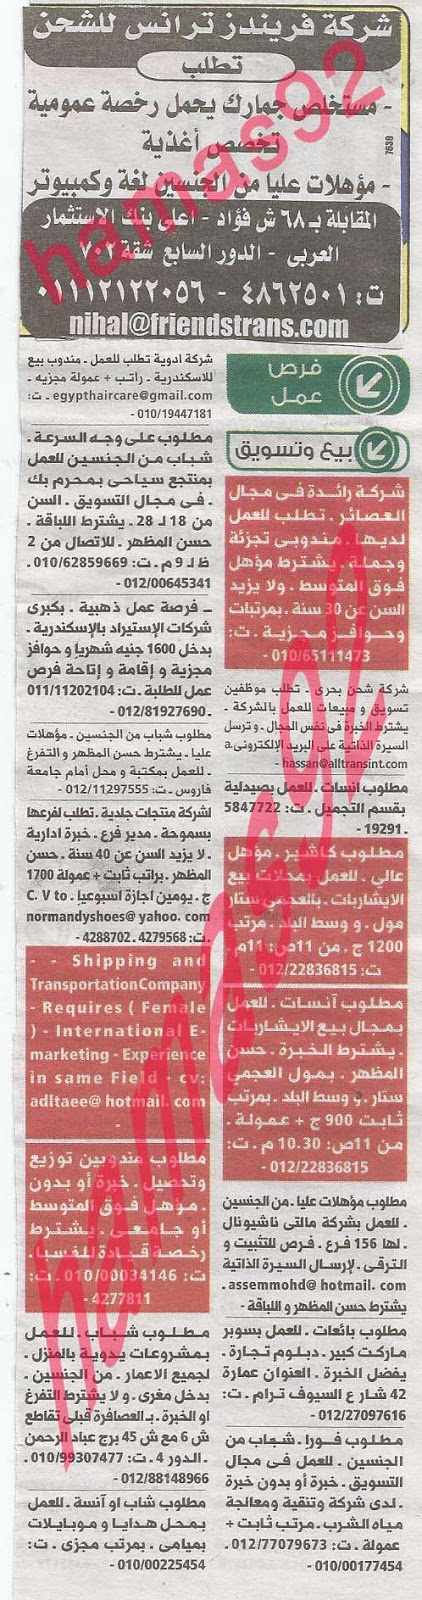 وظائف خالية فى جريدة الوسيط الاسكندرية الاثنين 26-08-2013 %D9%88+%D8%B3+%D8%B3+12